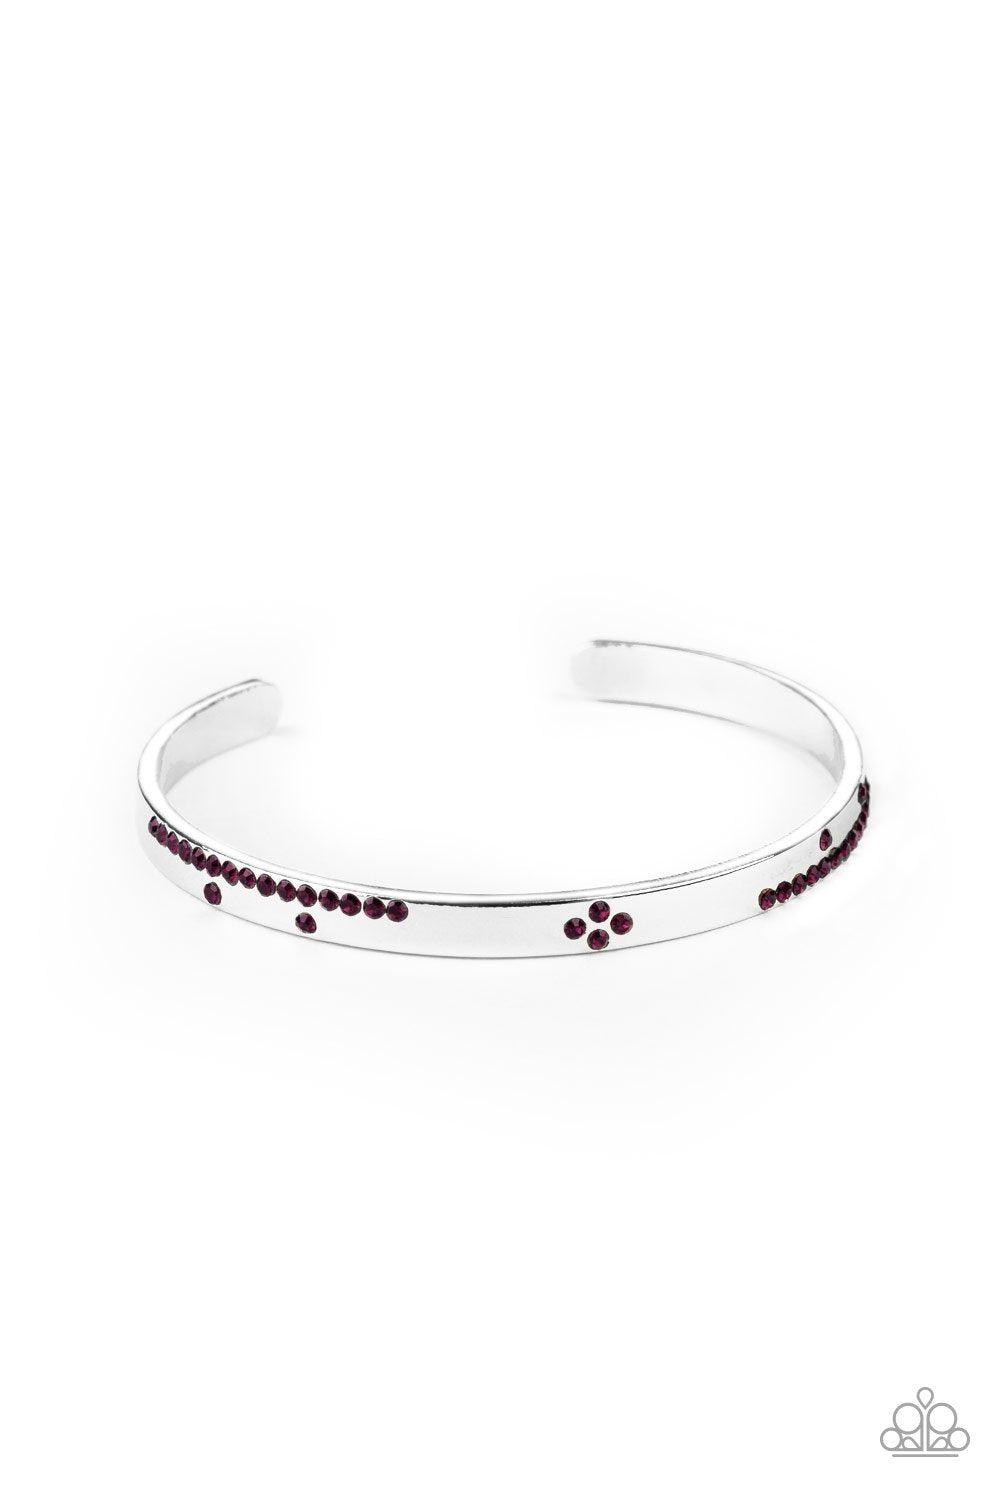 Dainty Dazzle Purple Rhinestone Cuff Bracelet - Paparazzi Accessories-CarasShop.com - $5 Jewelry by Cara Jewels